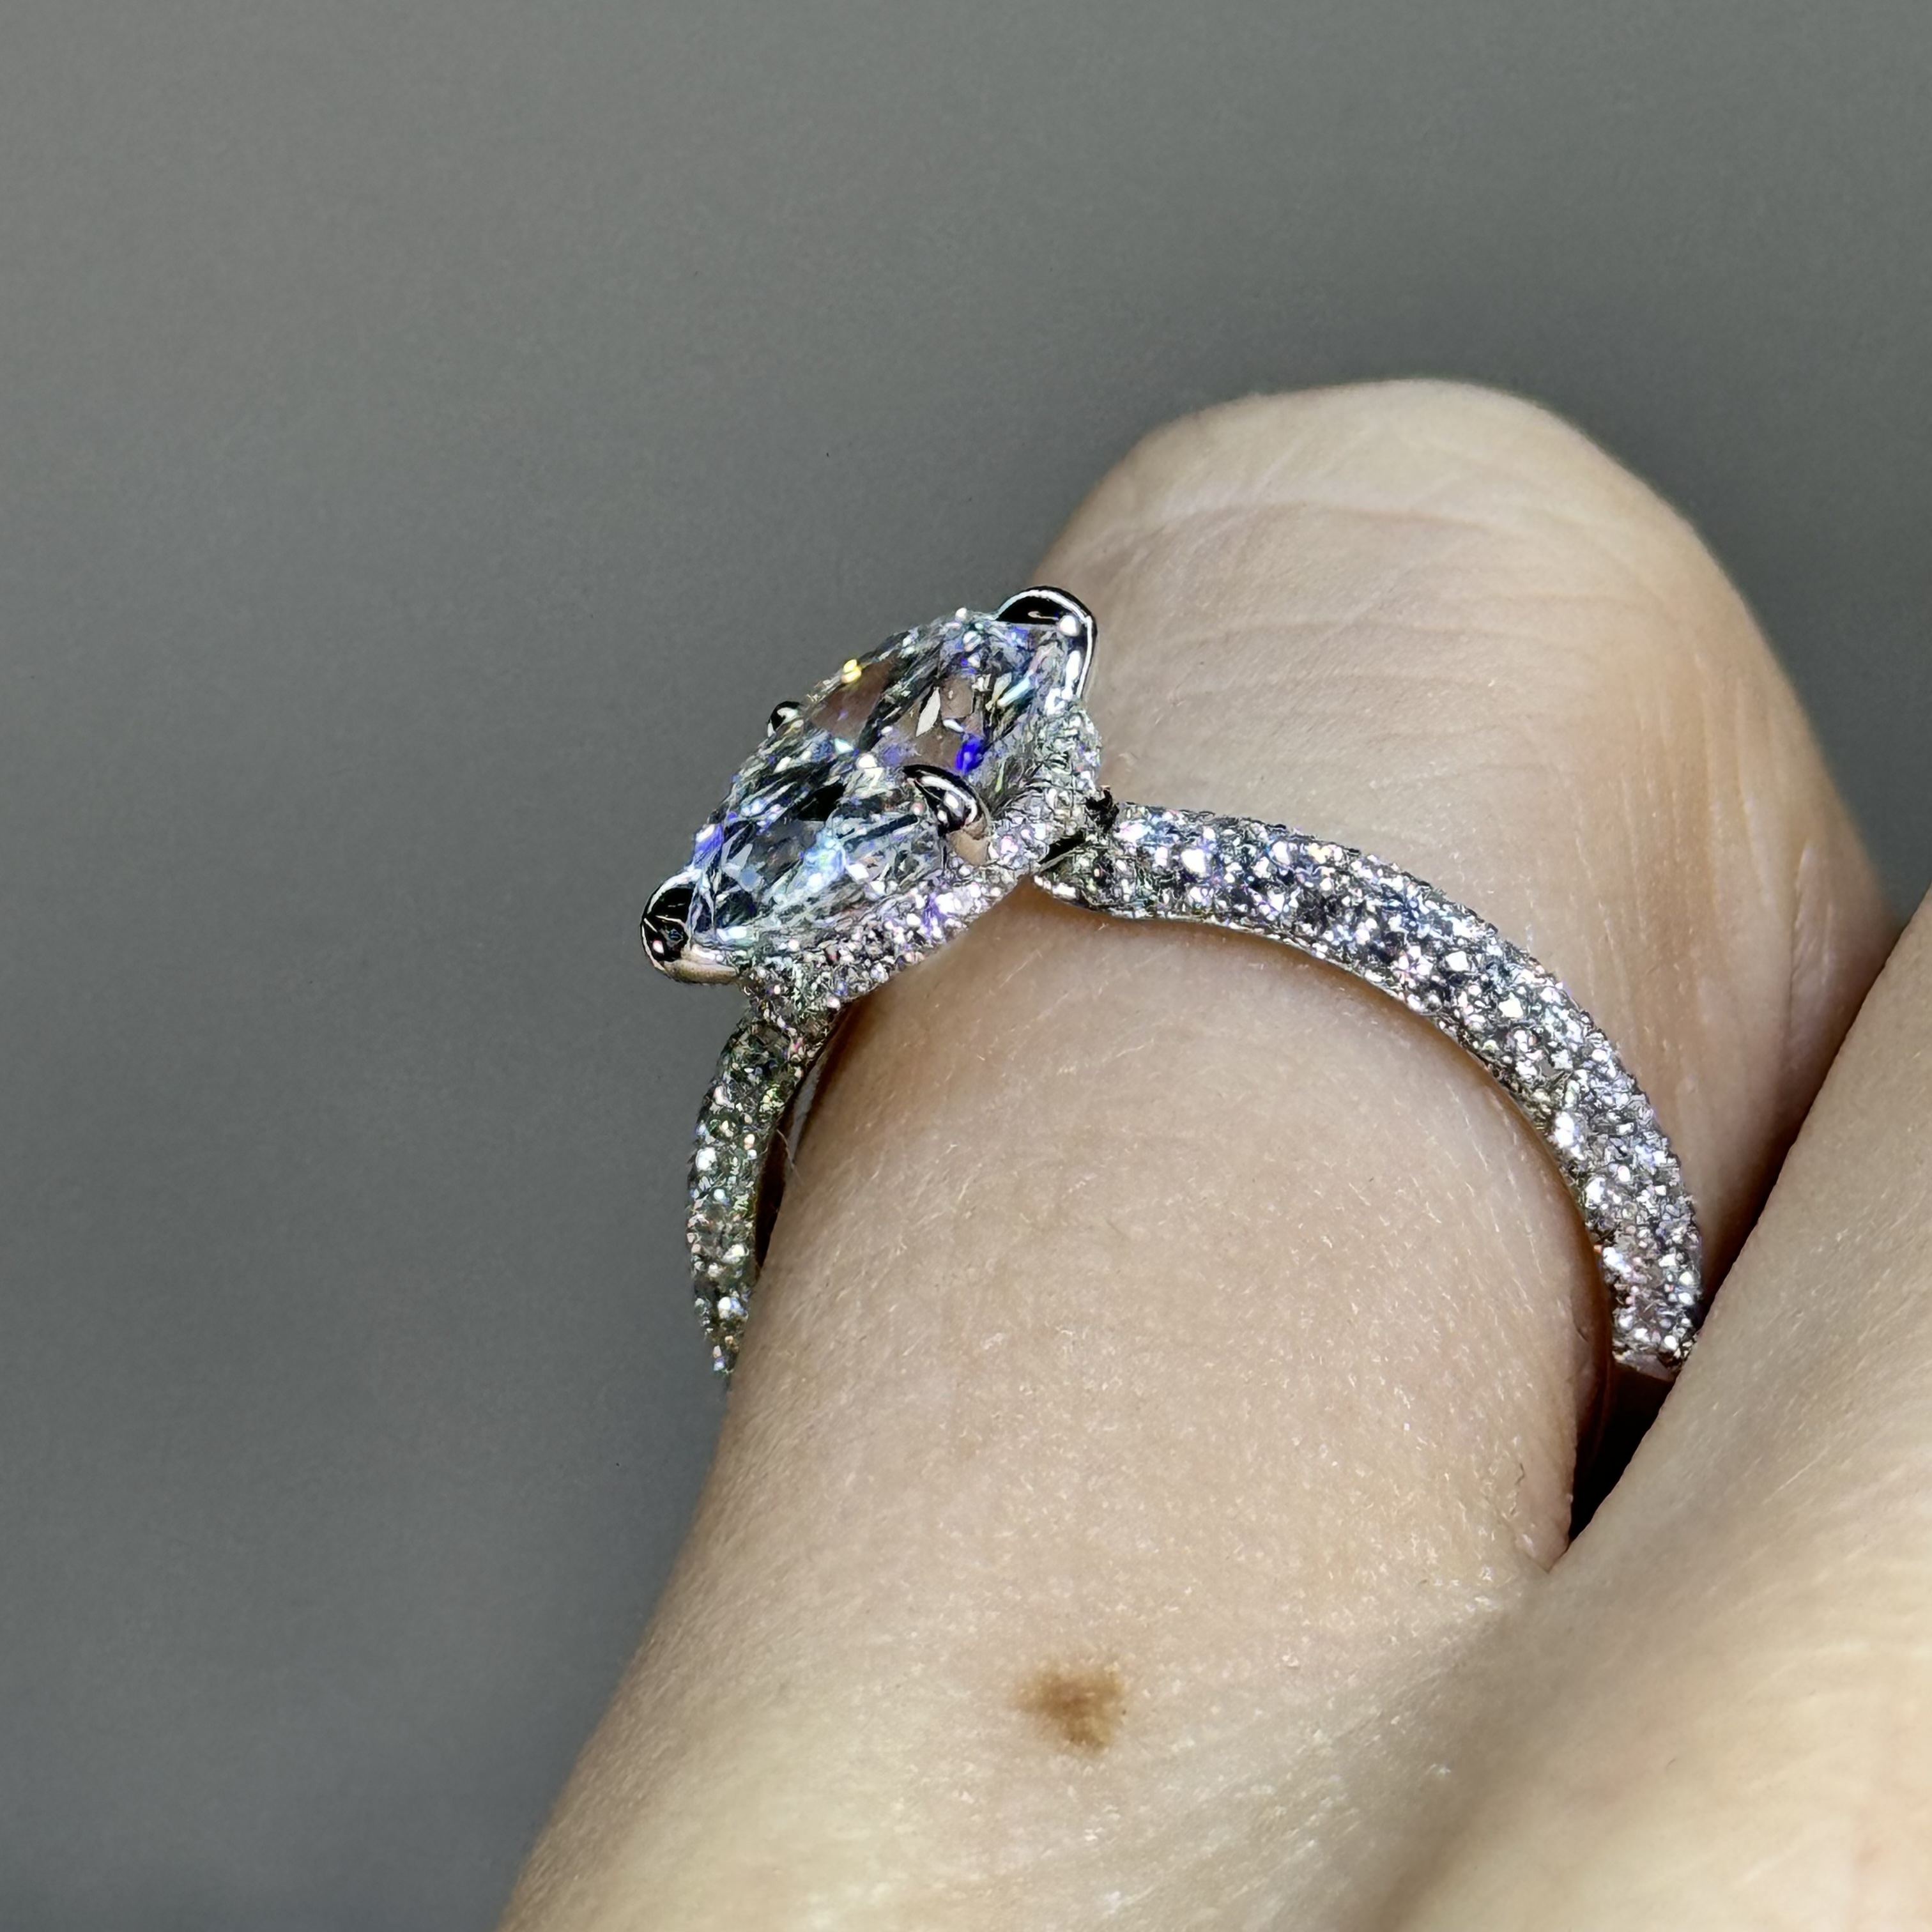 GIA 3.02 E VS1 Oval "Celine" Engagement Ring Image 2 Forever Diamonds New York, NY